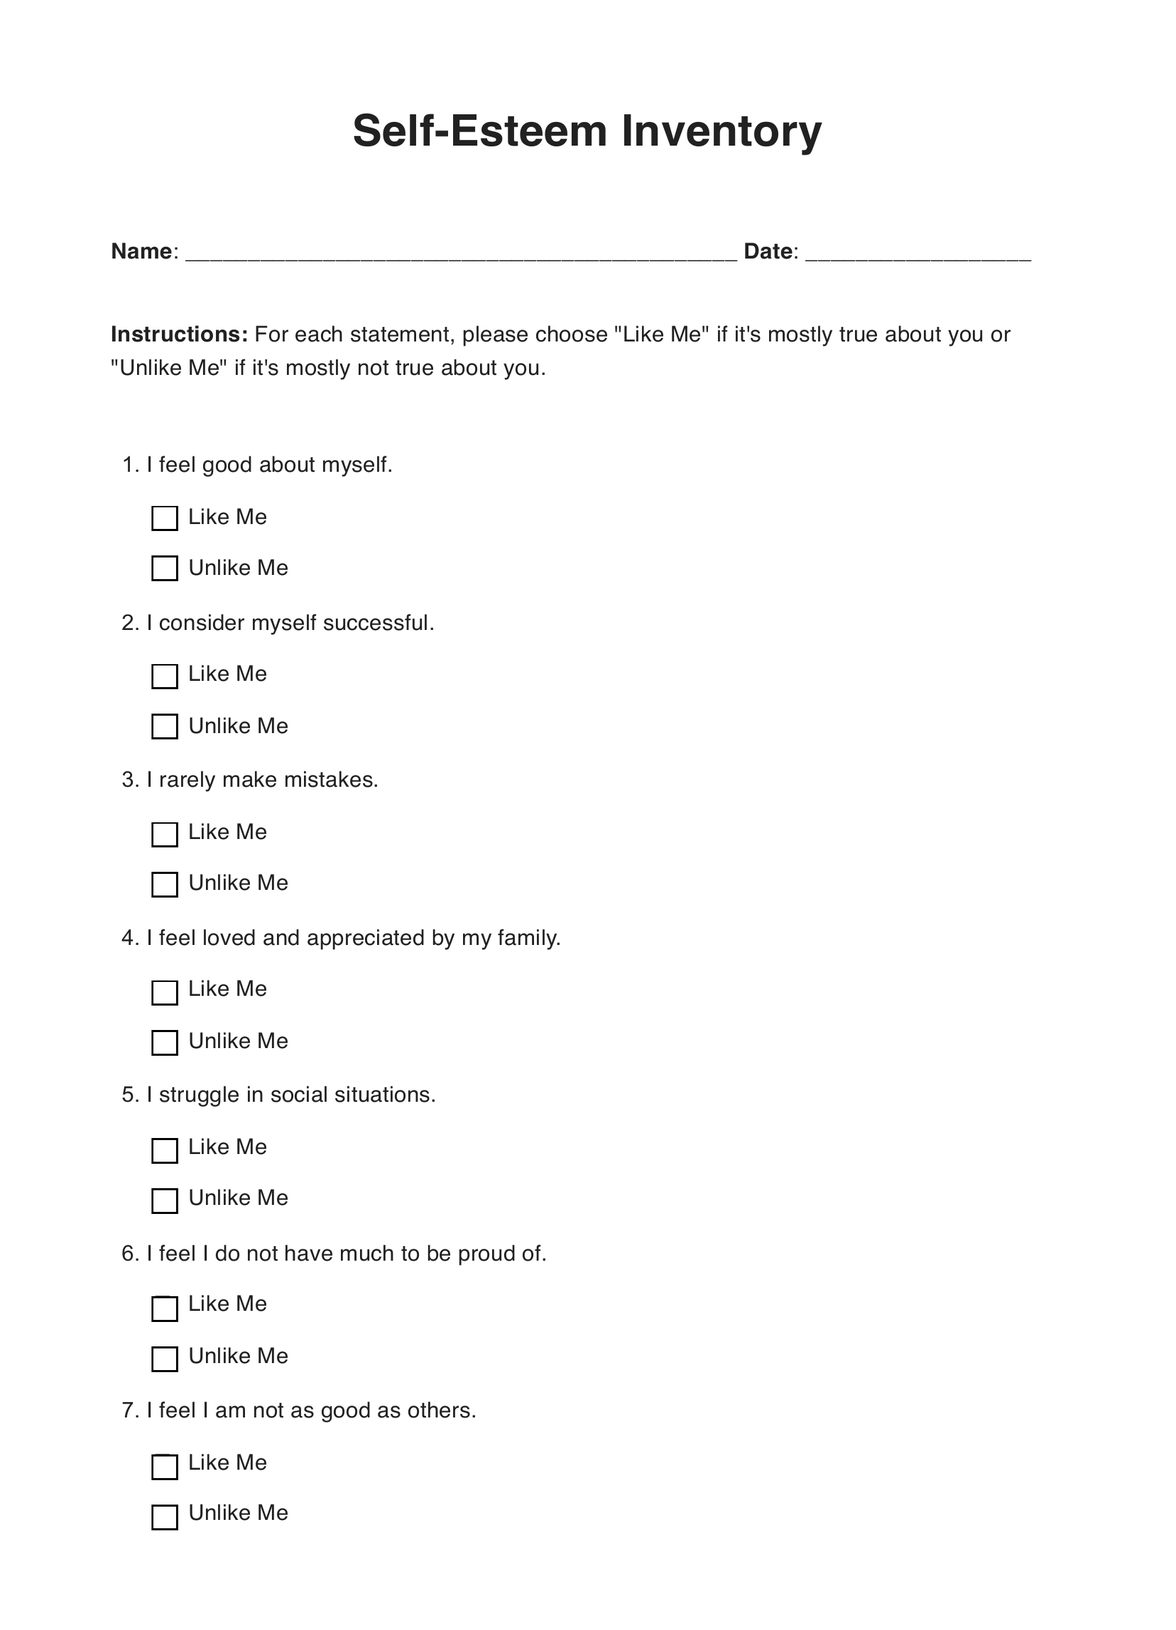 Coopersmith Self-Esteem Inventory (CSEI) PDF Example